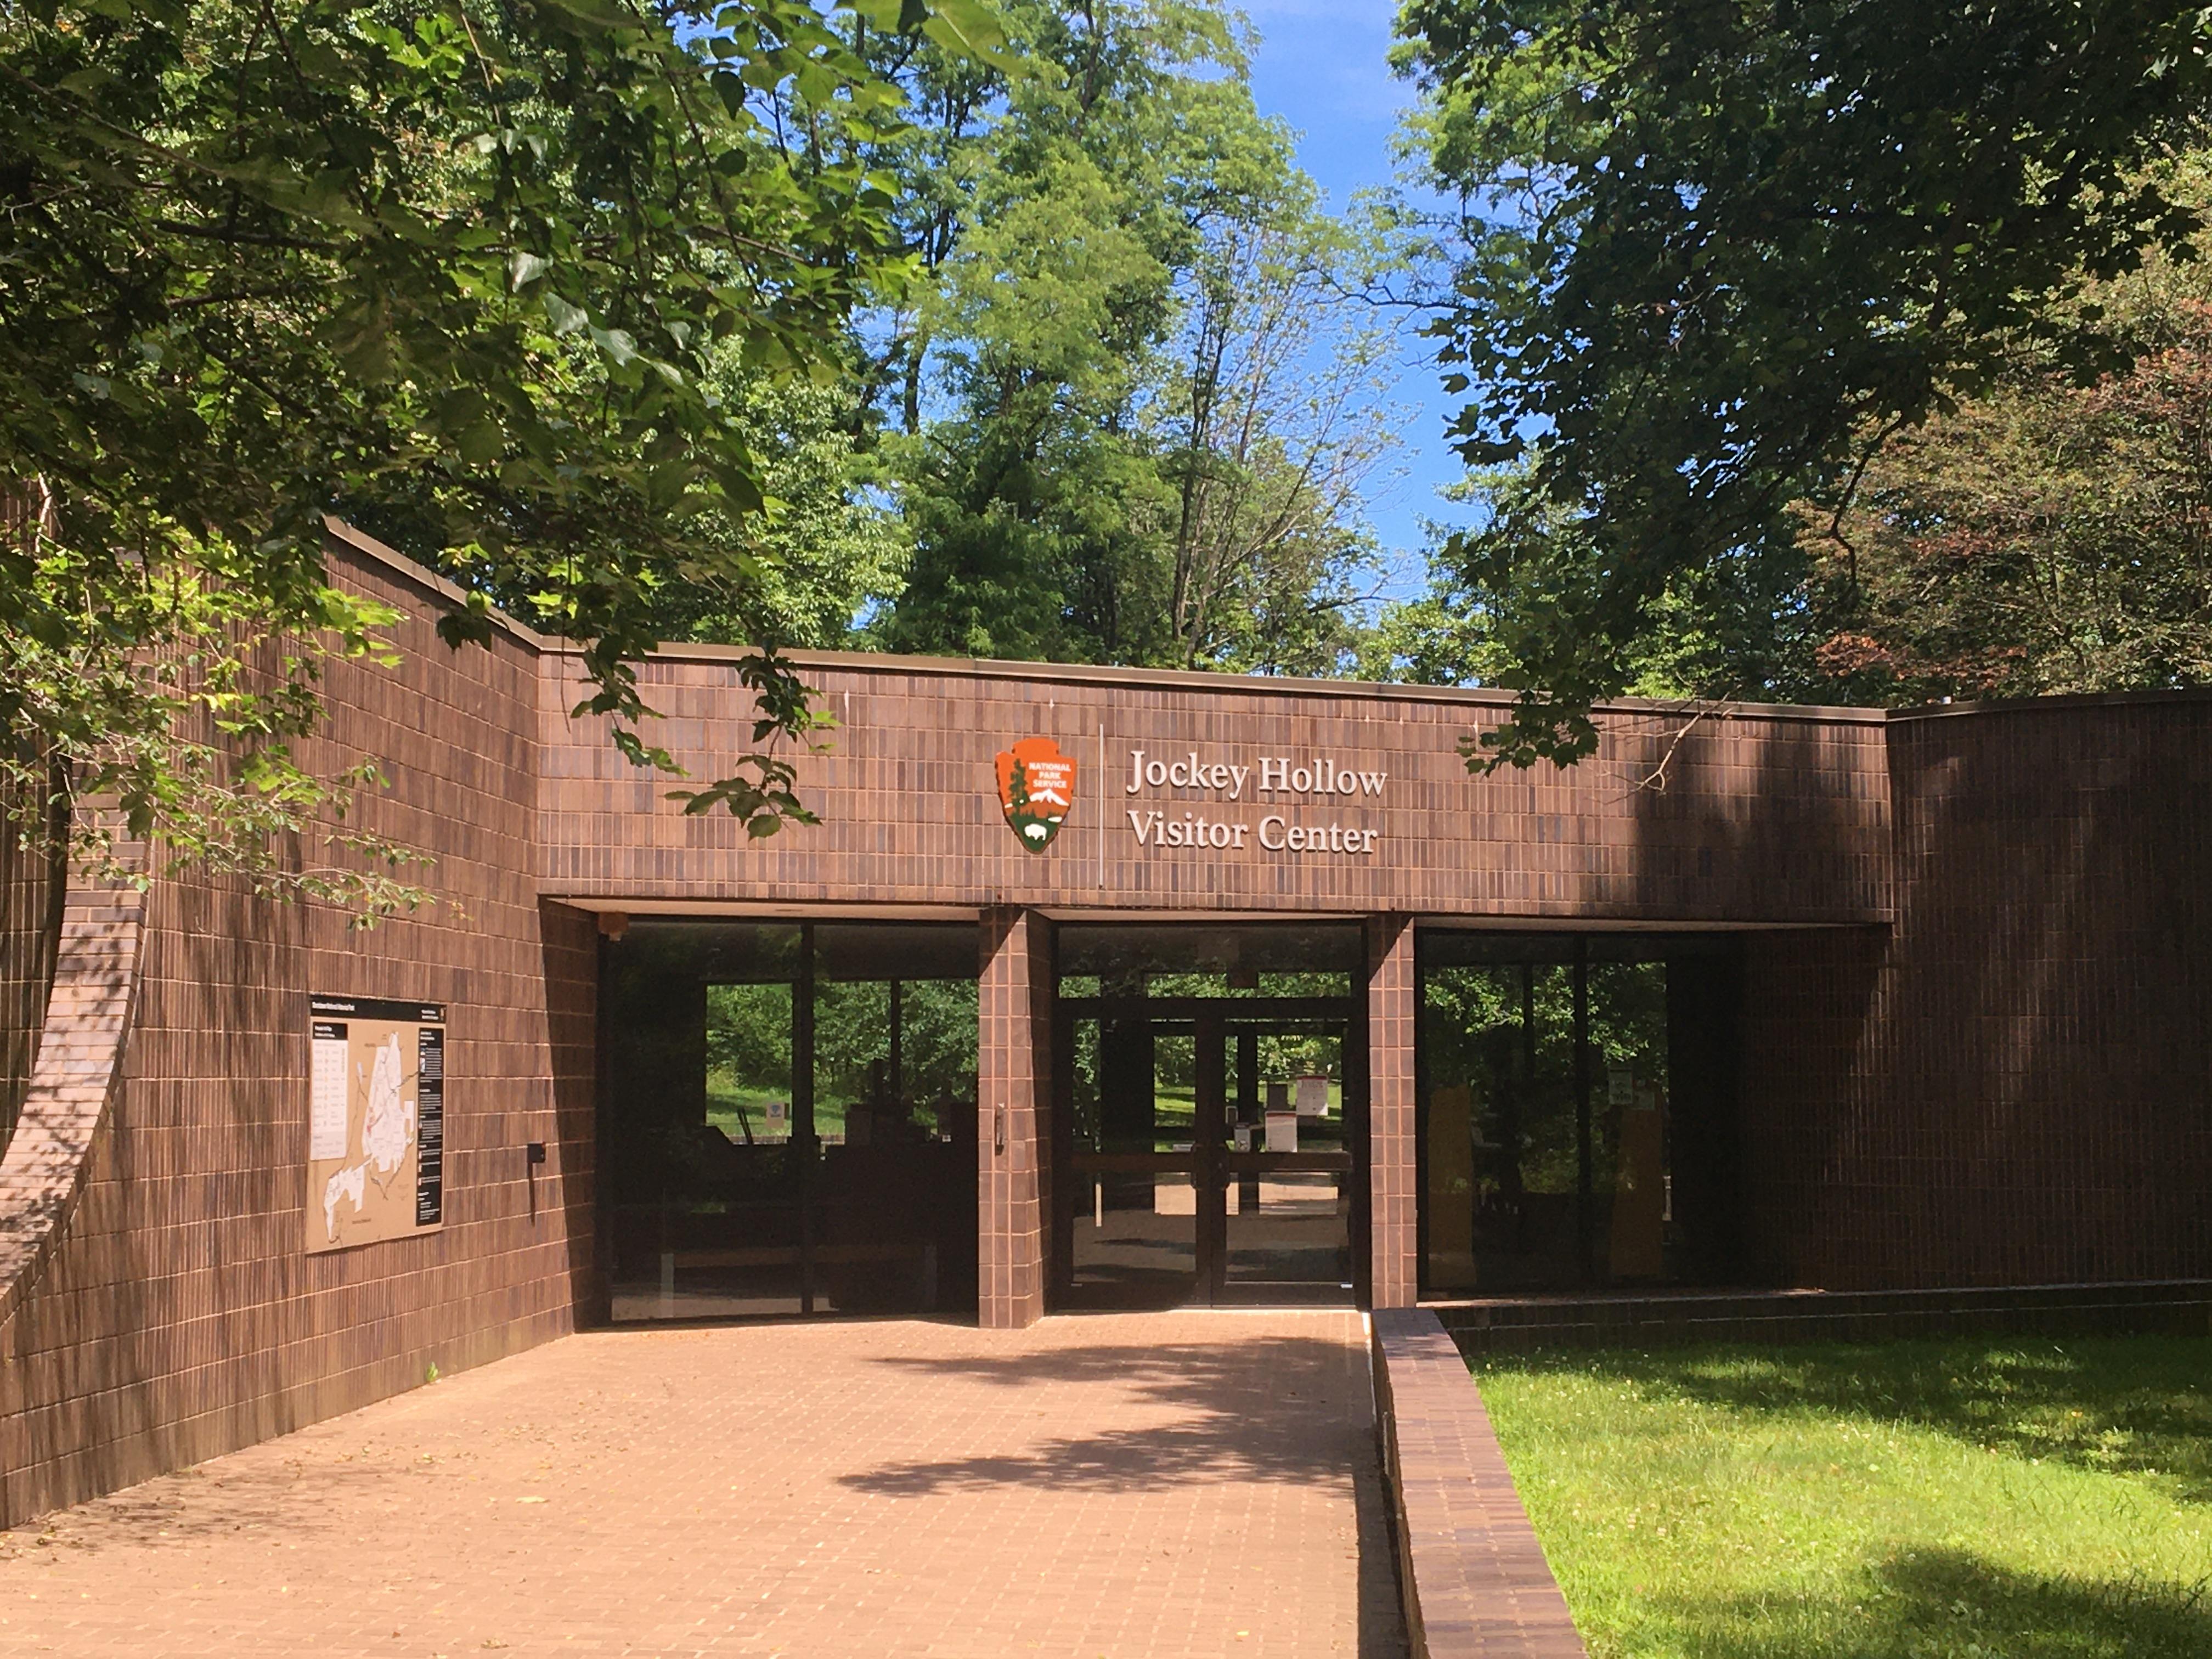 Jockey Hollow Visitor Center